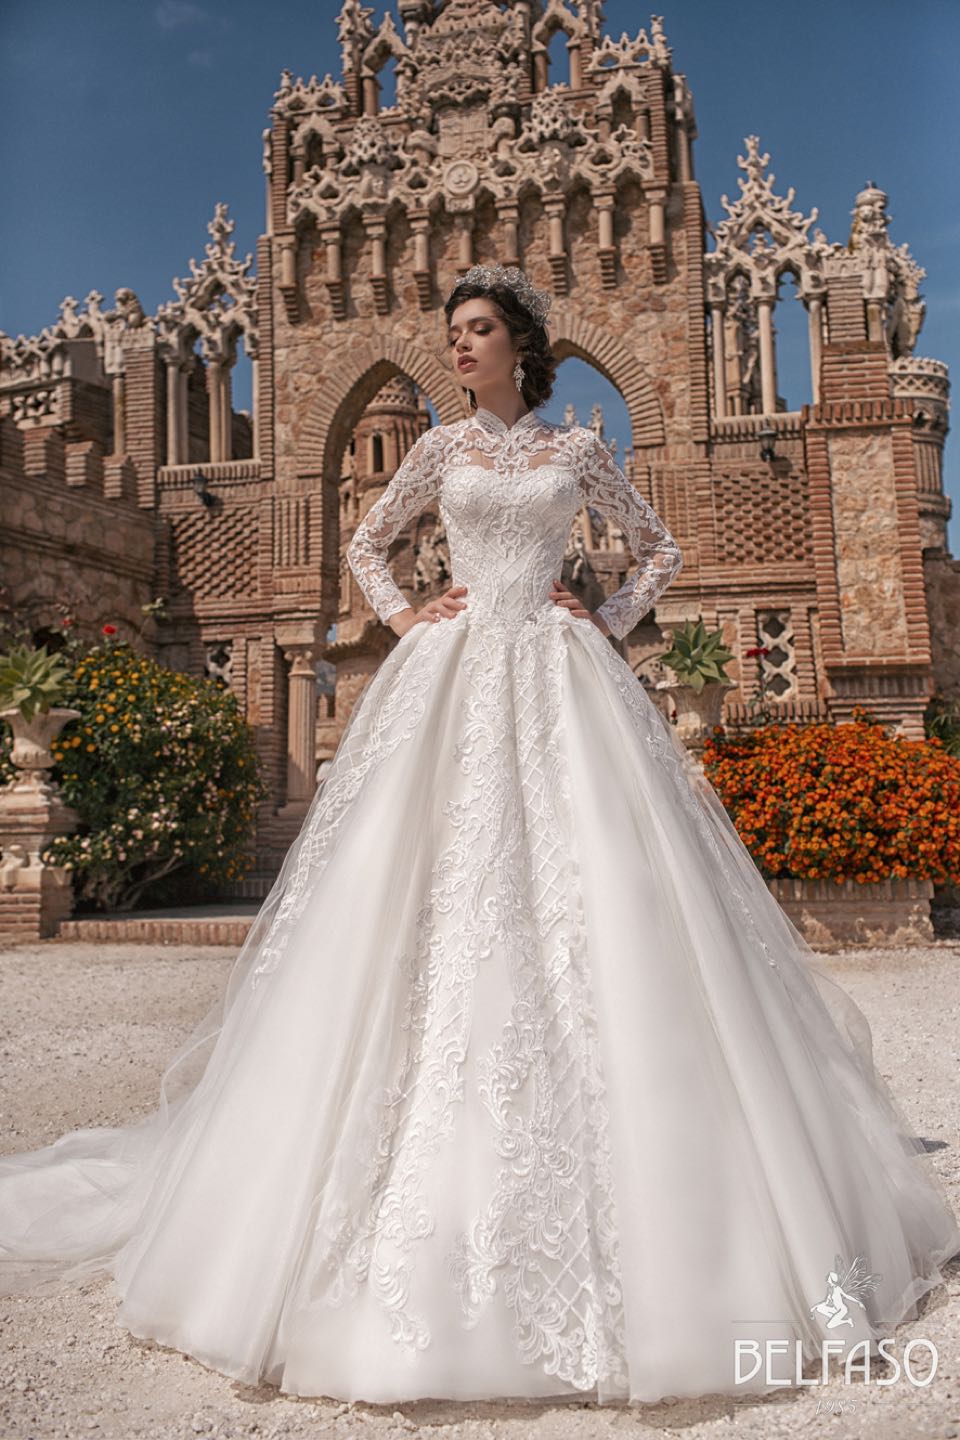 Свадебное платье Belfaso 2019